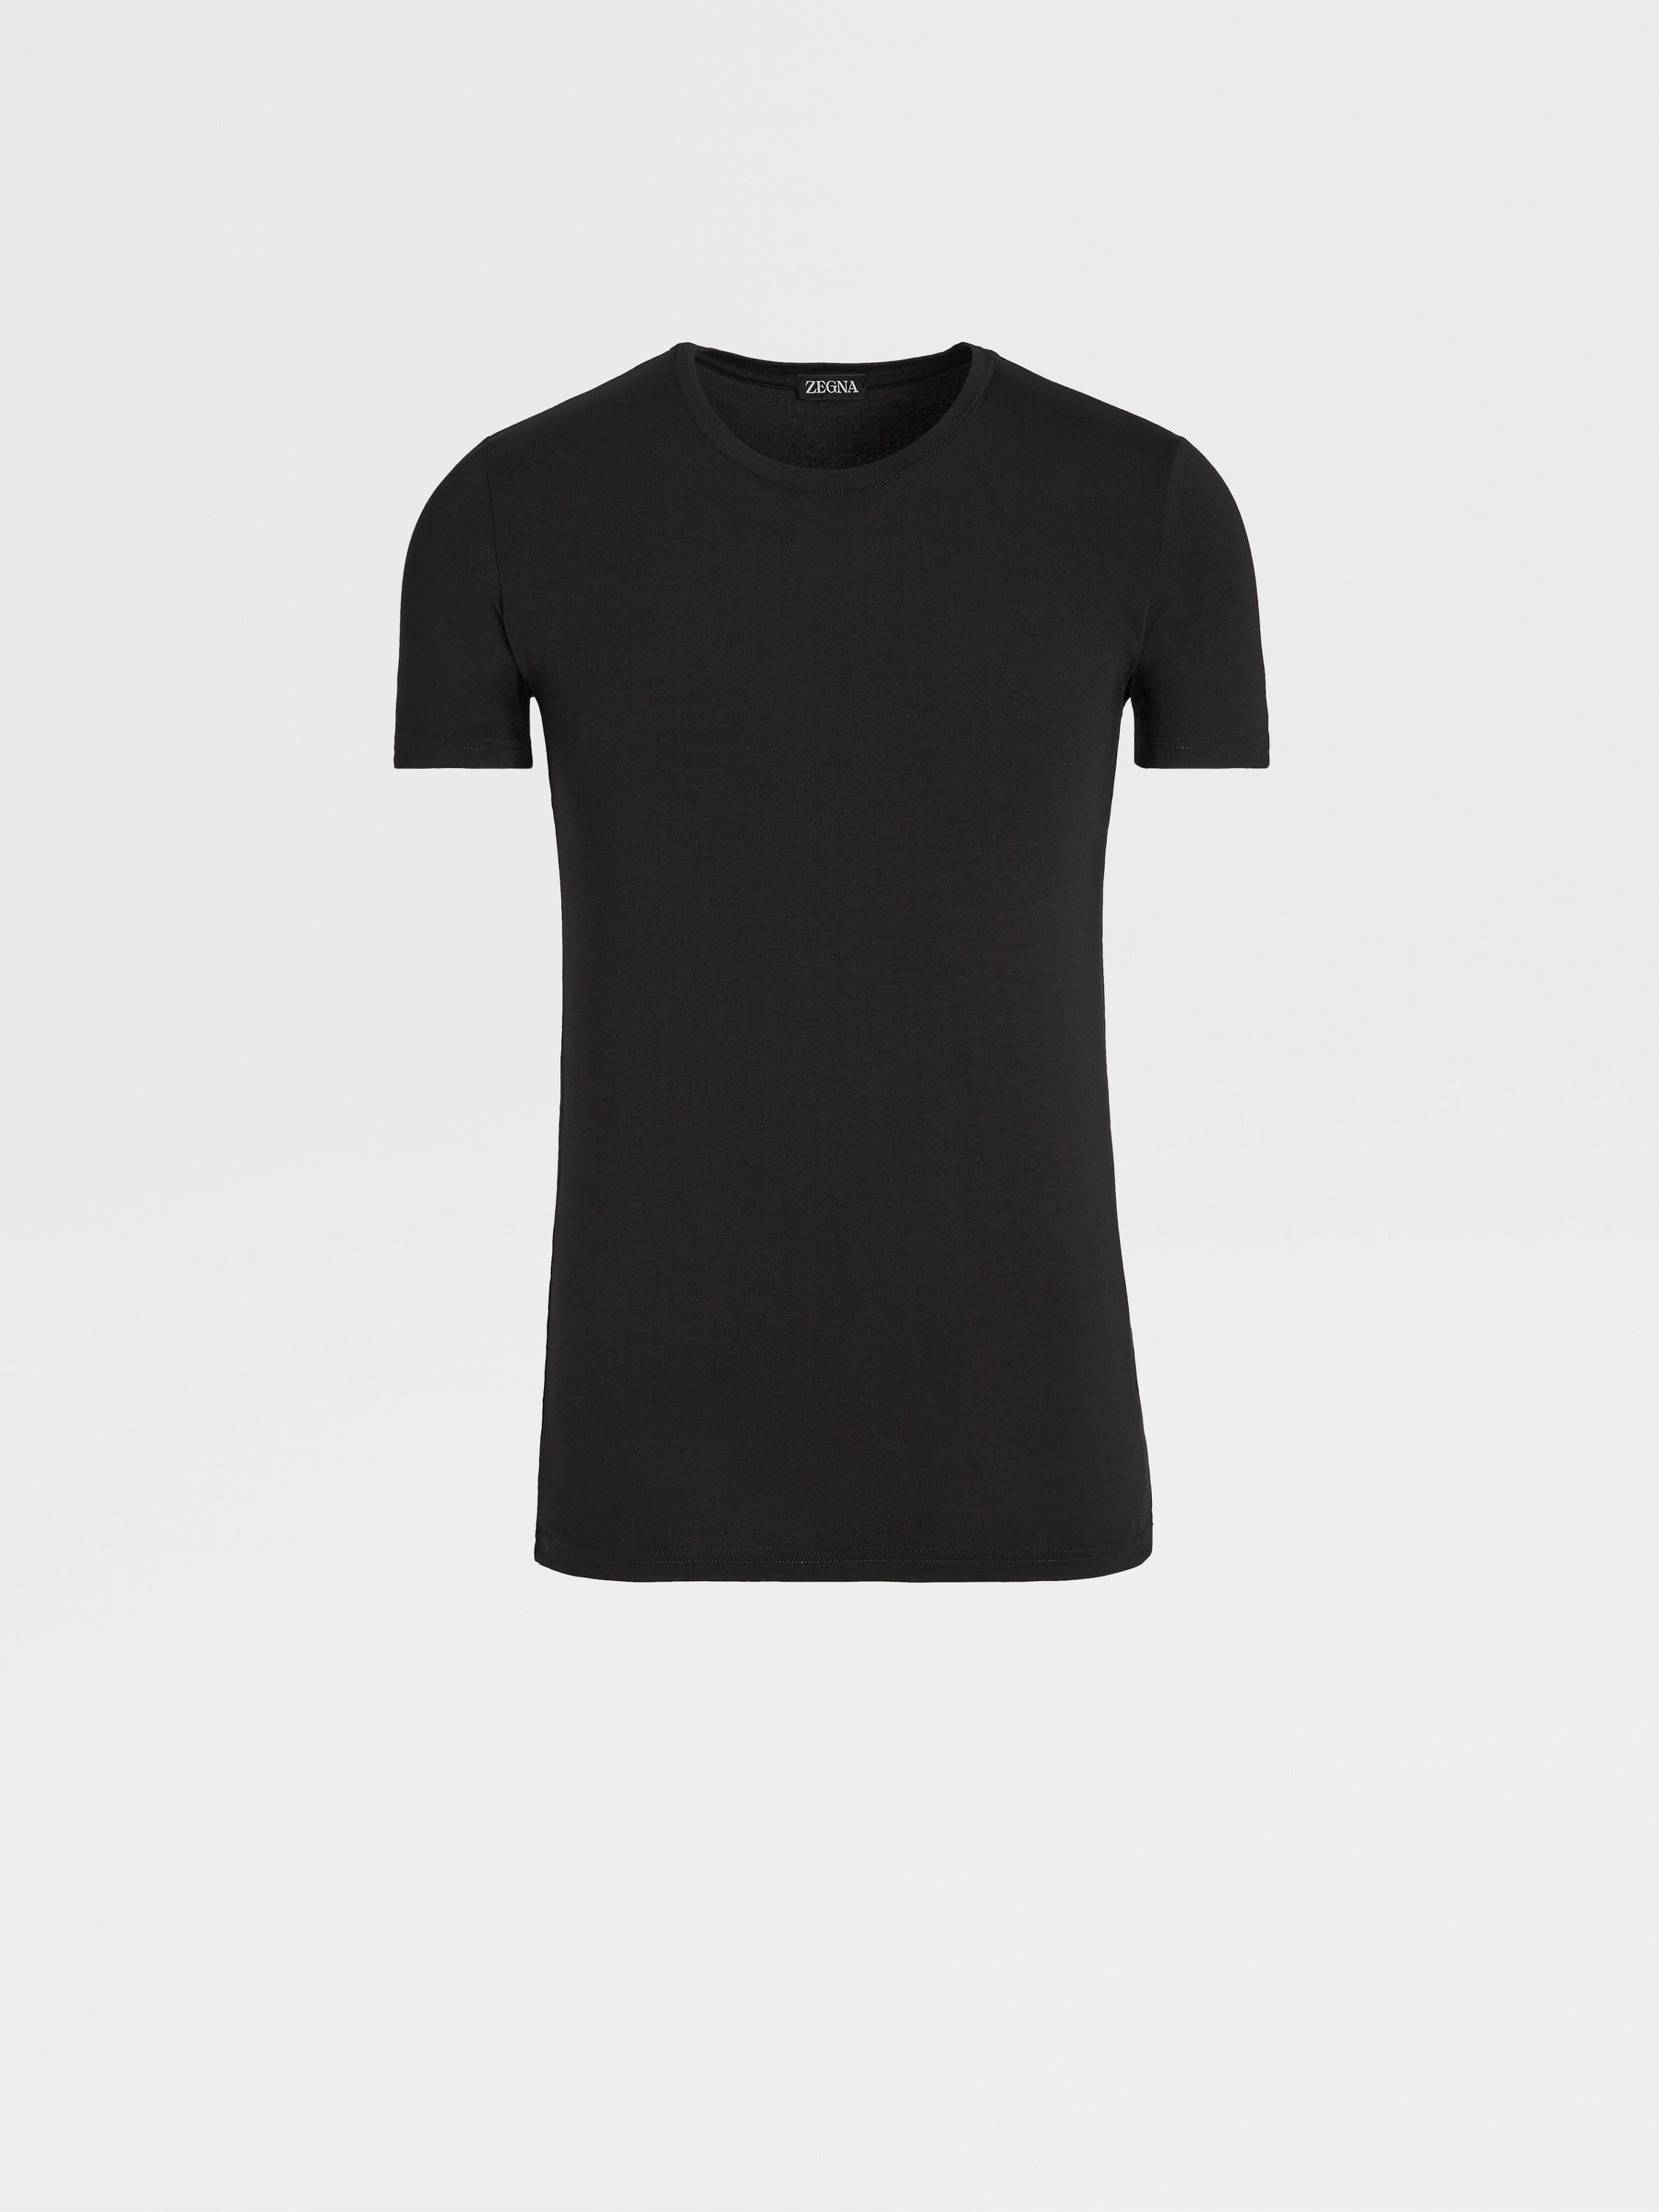 Camiseta en Modal Elástico Negra